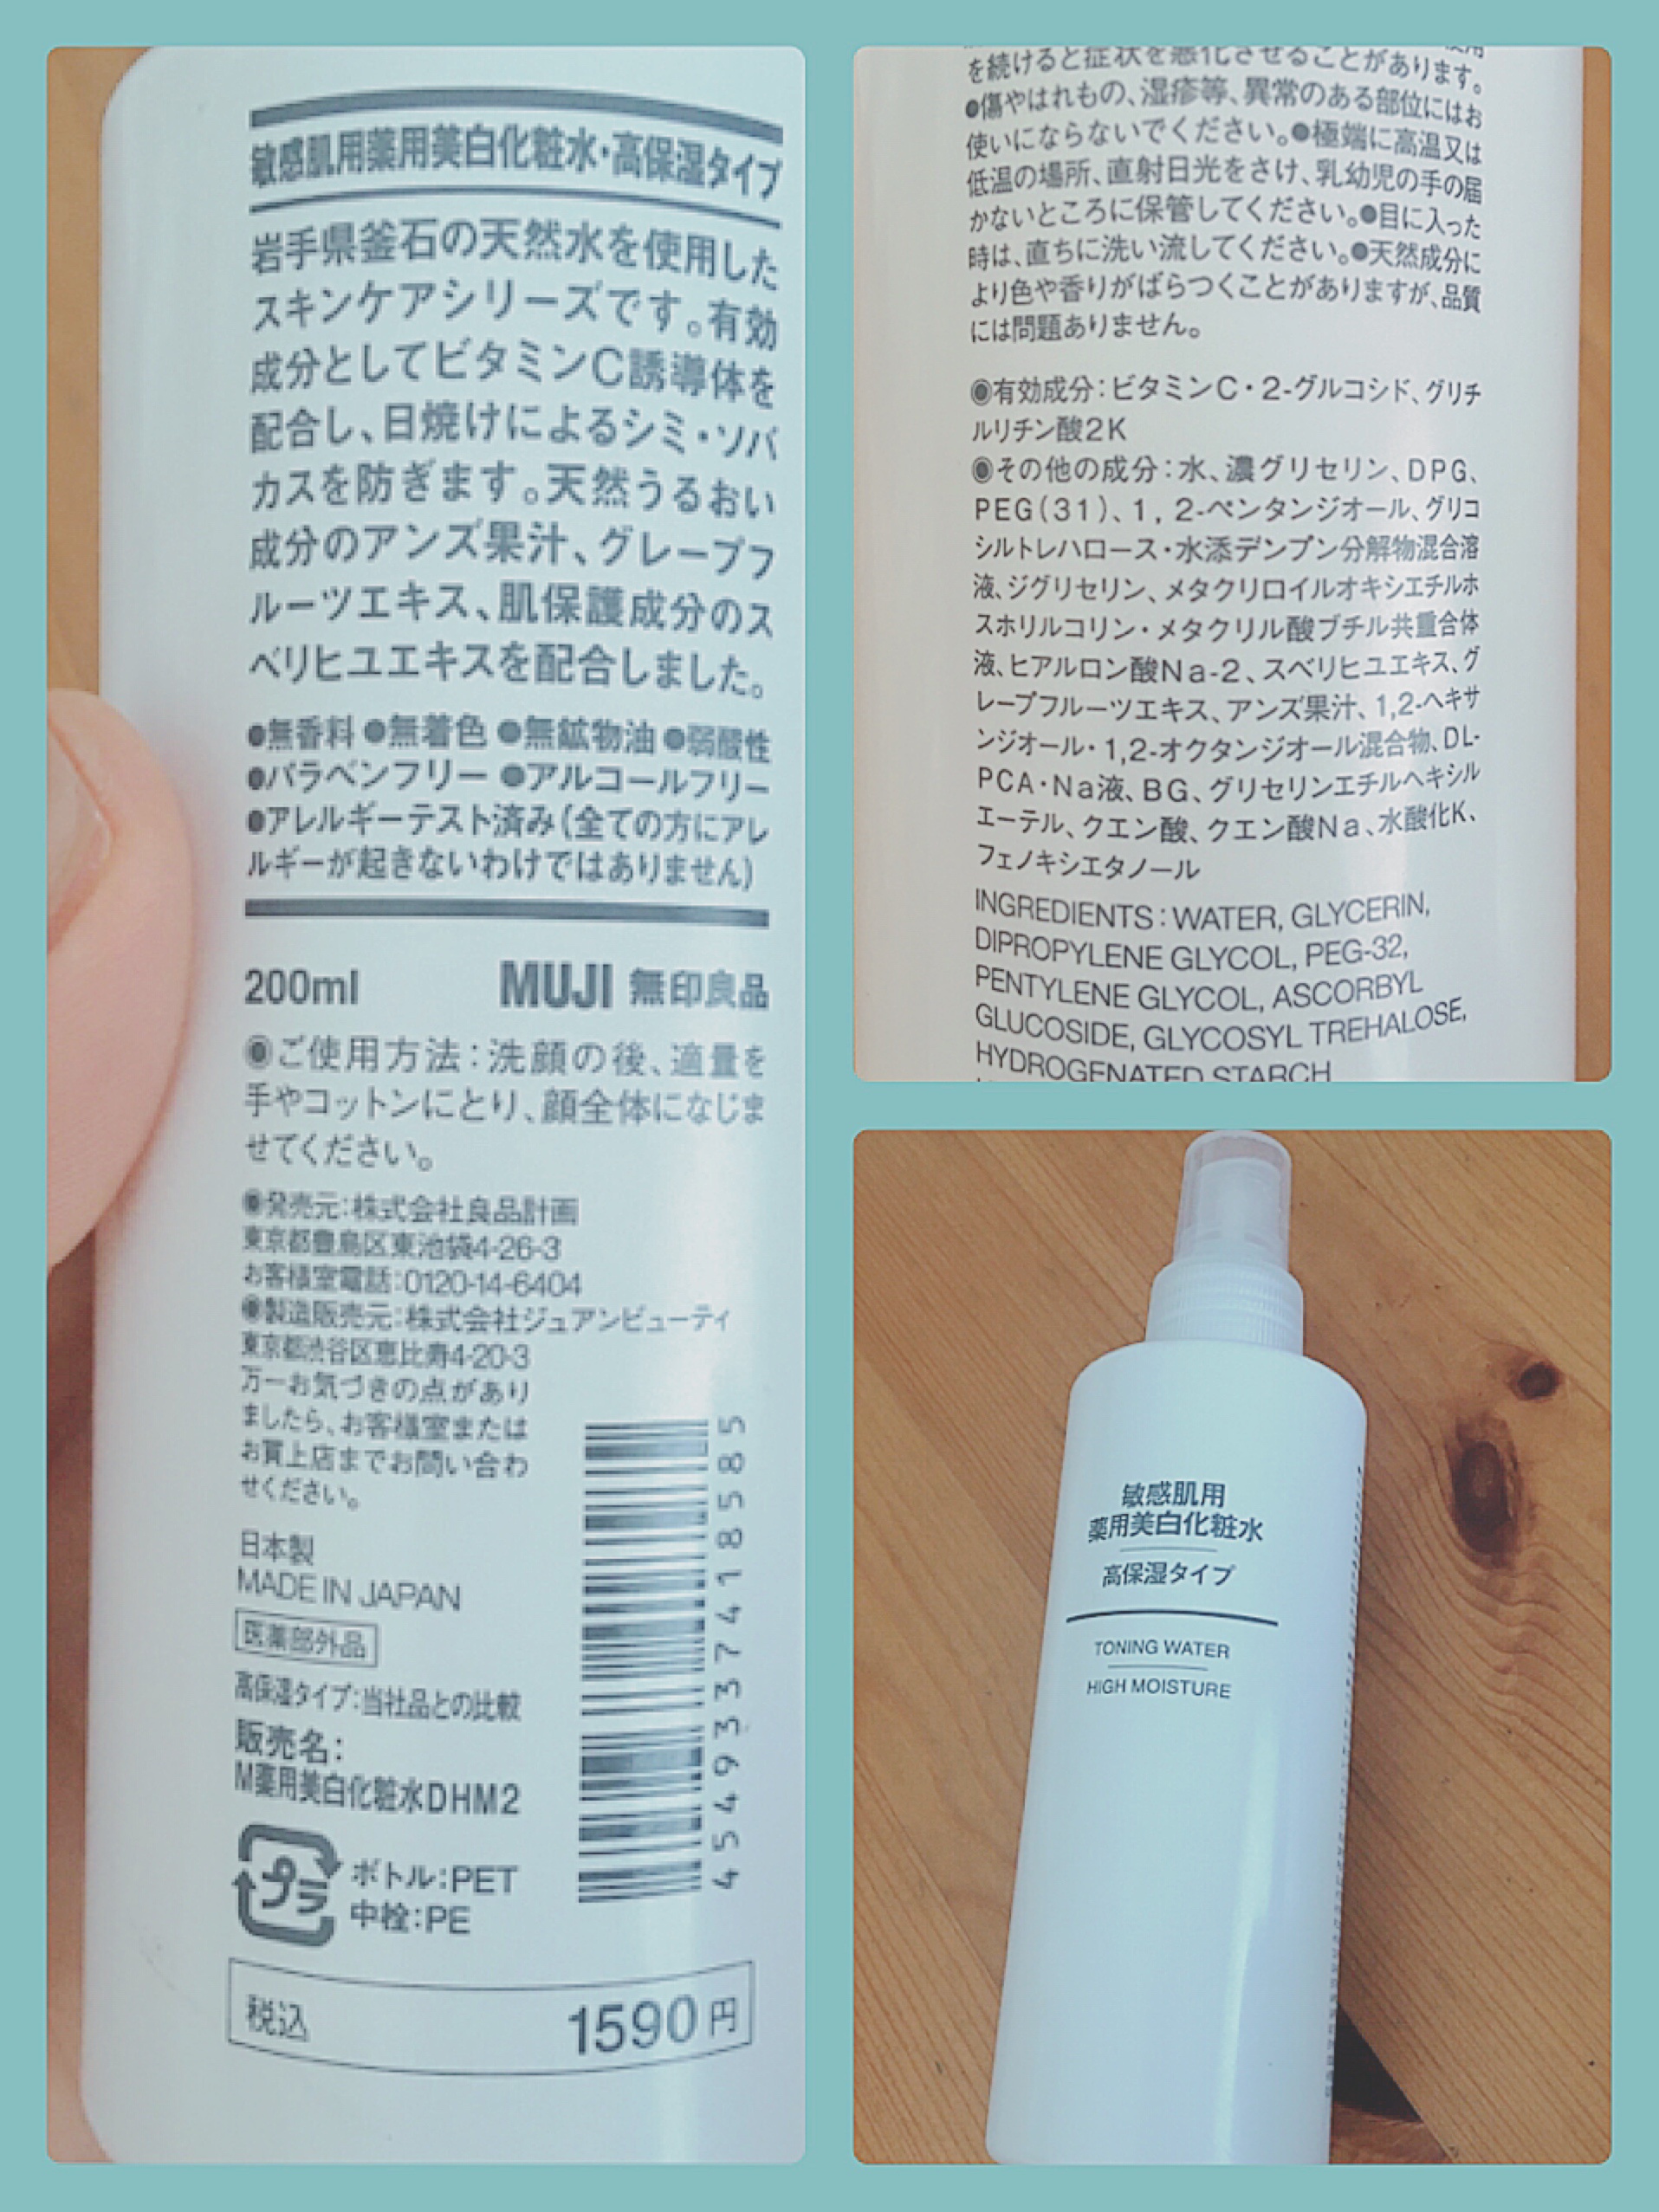 無印良品 / 敏感肌用薬用美白化粧水・高保湿タイプ(旧) 200mlの公式 